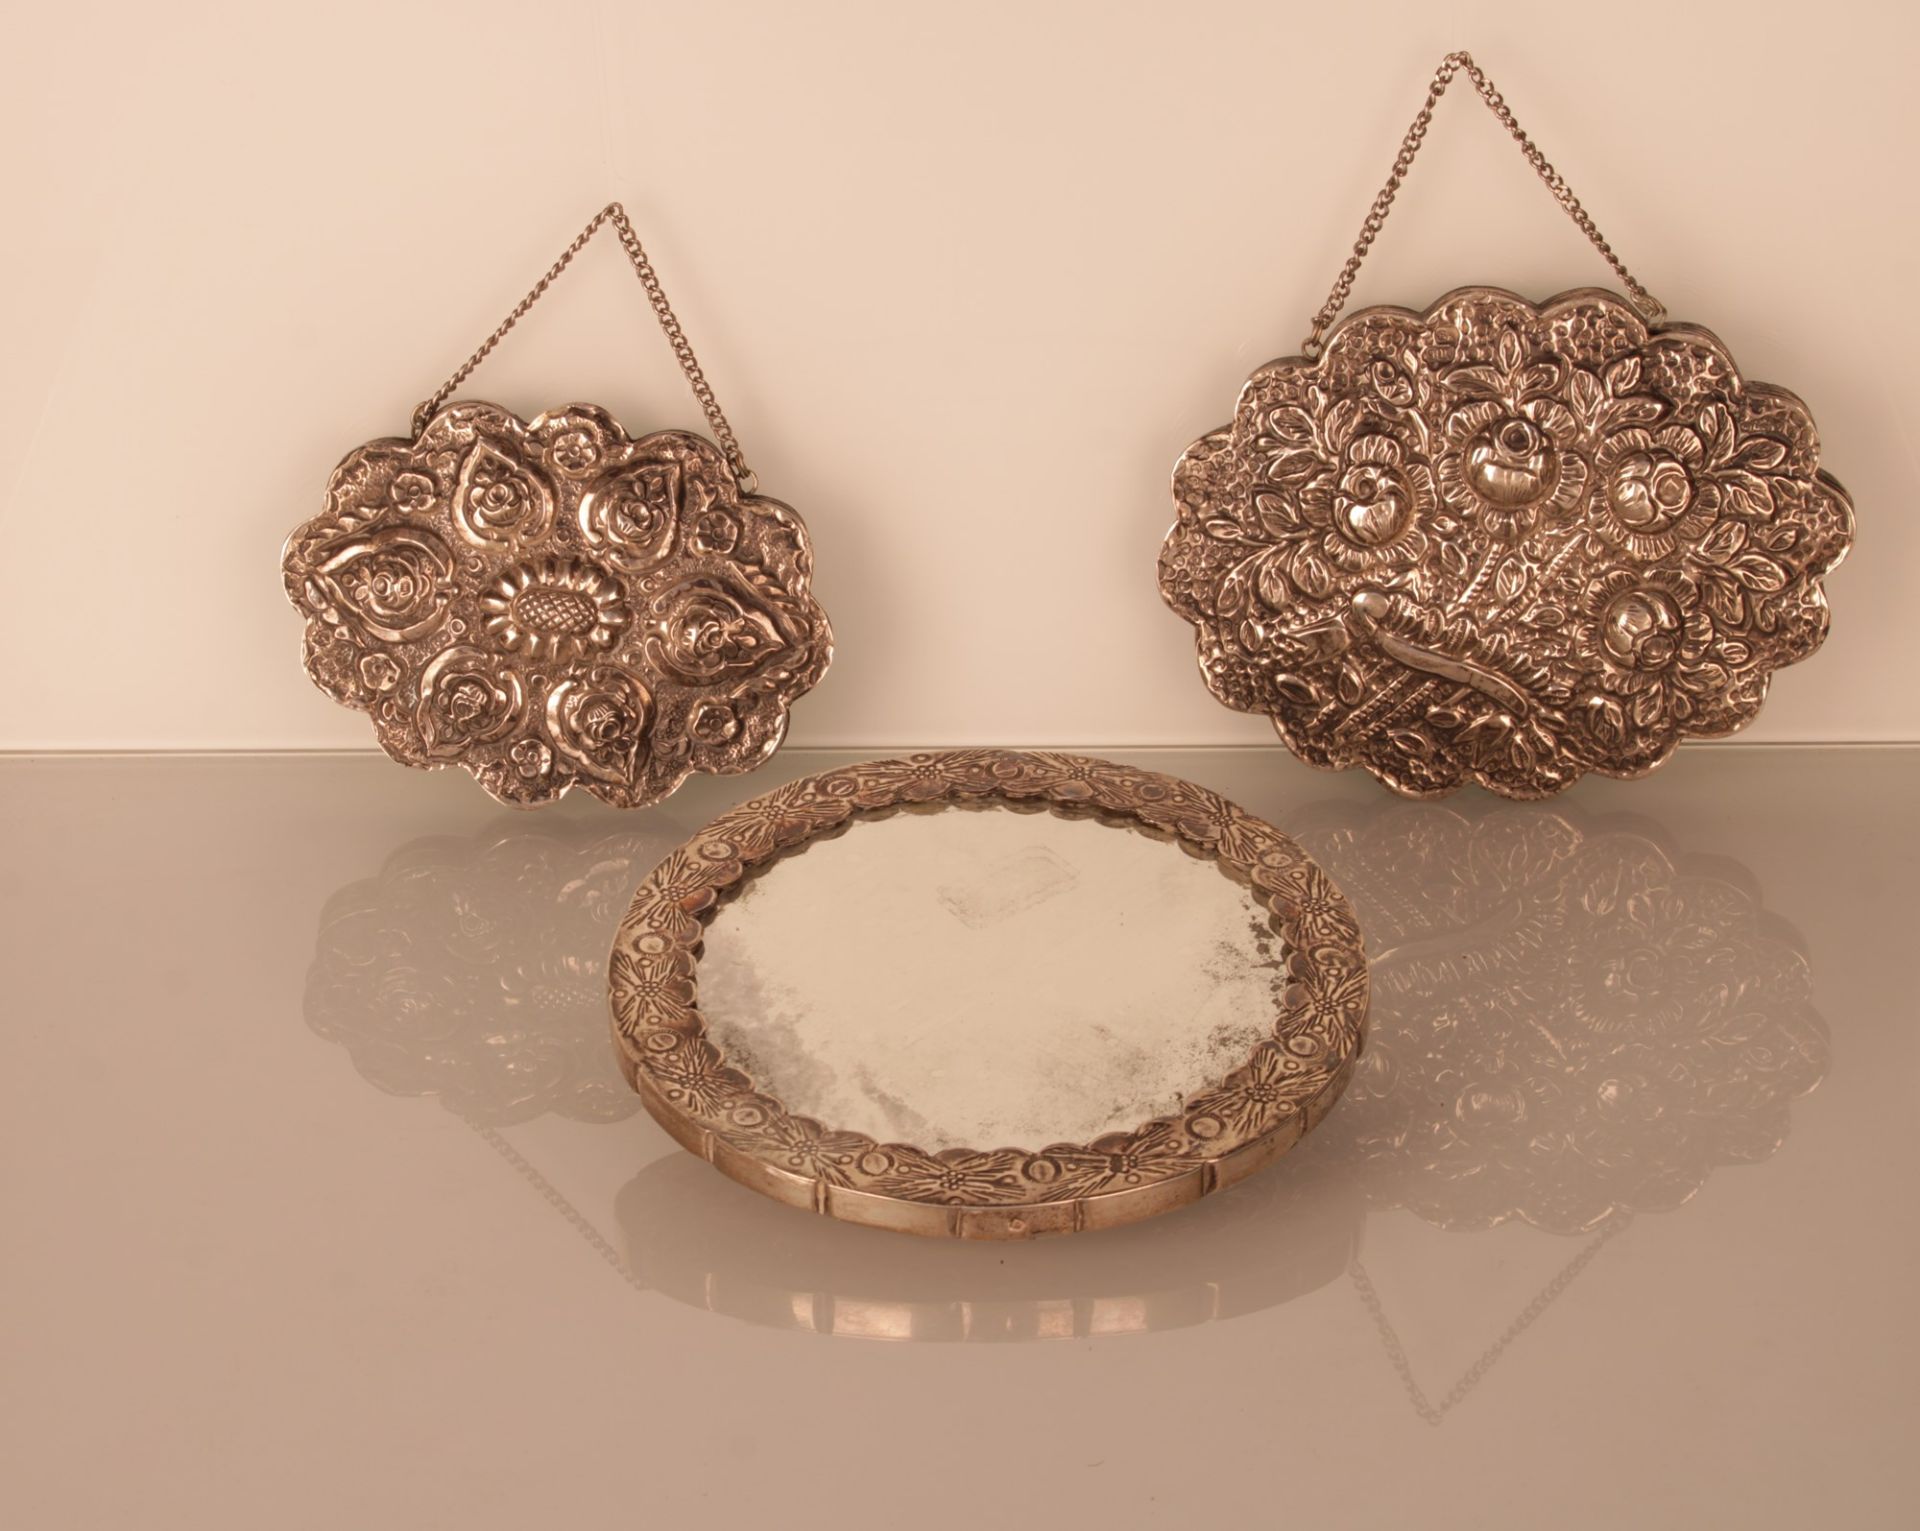 Lotto di tre specchi "a fiore" in argento 800/1000 con catenella, due ovali ed uno tondo - Bild 2 aus 2